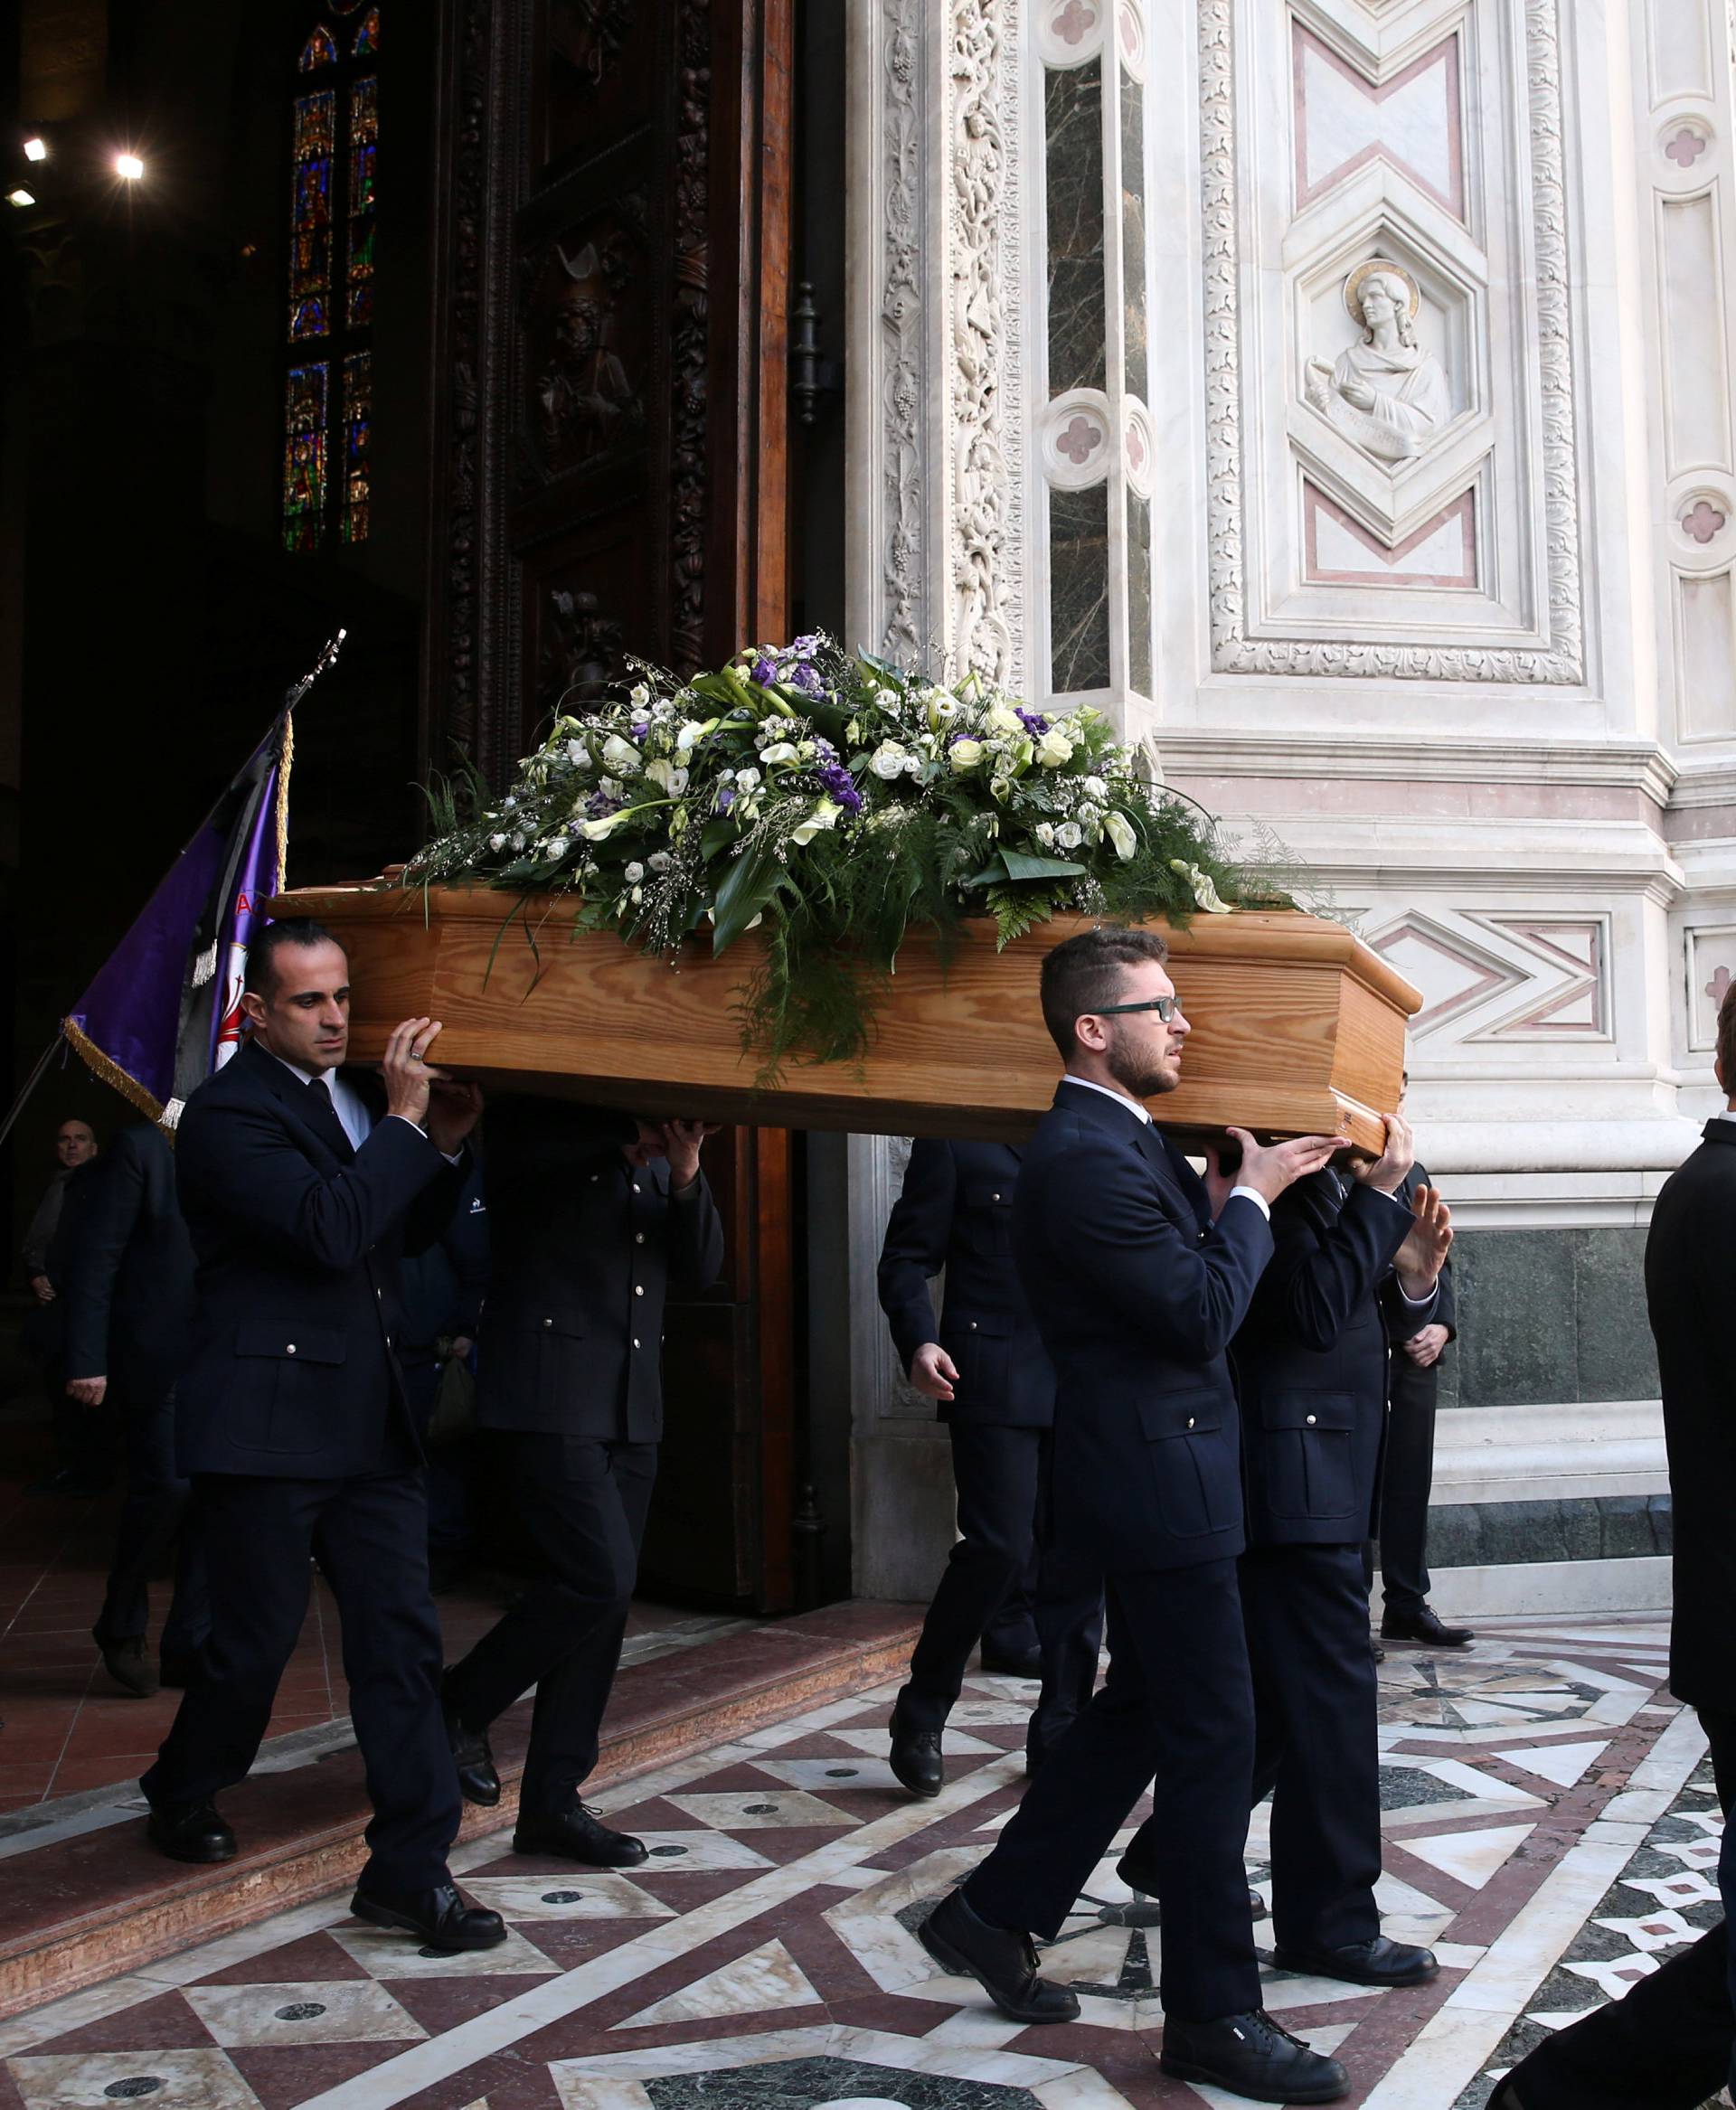 Davide Astori Funeral